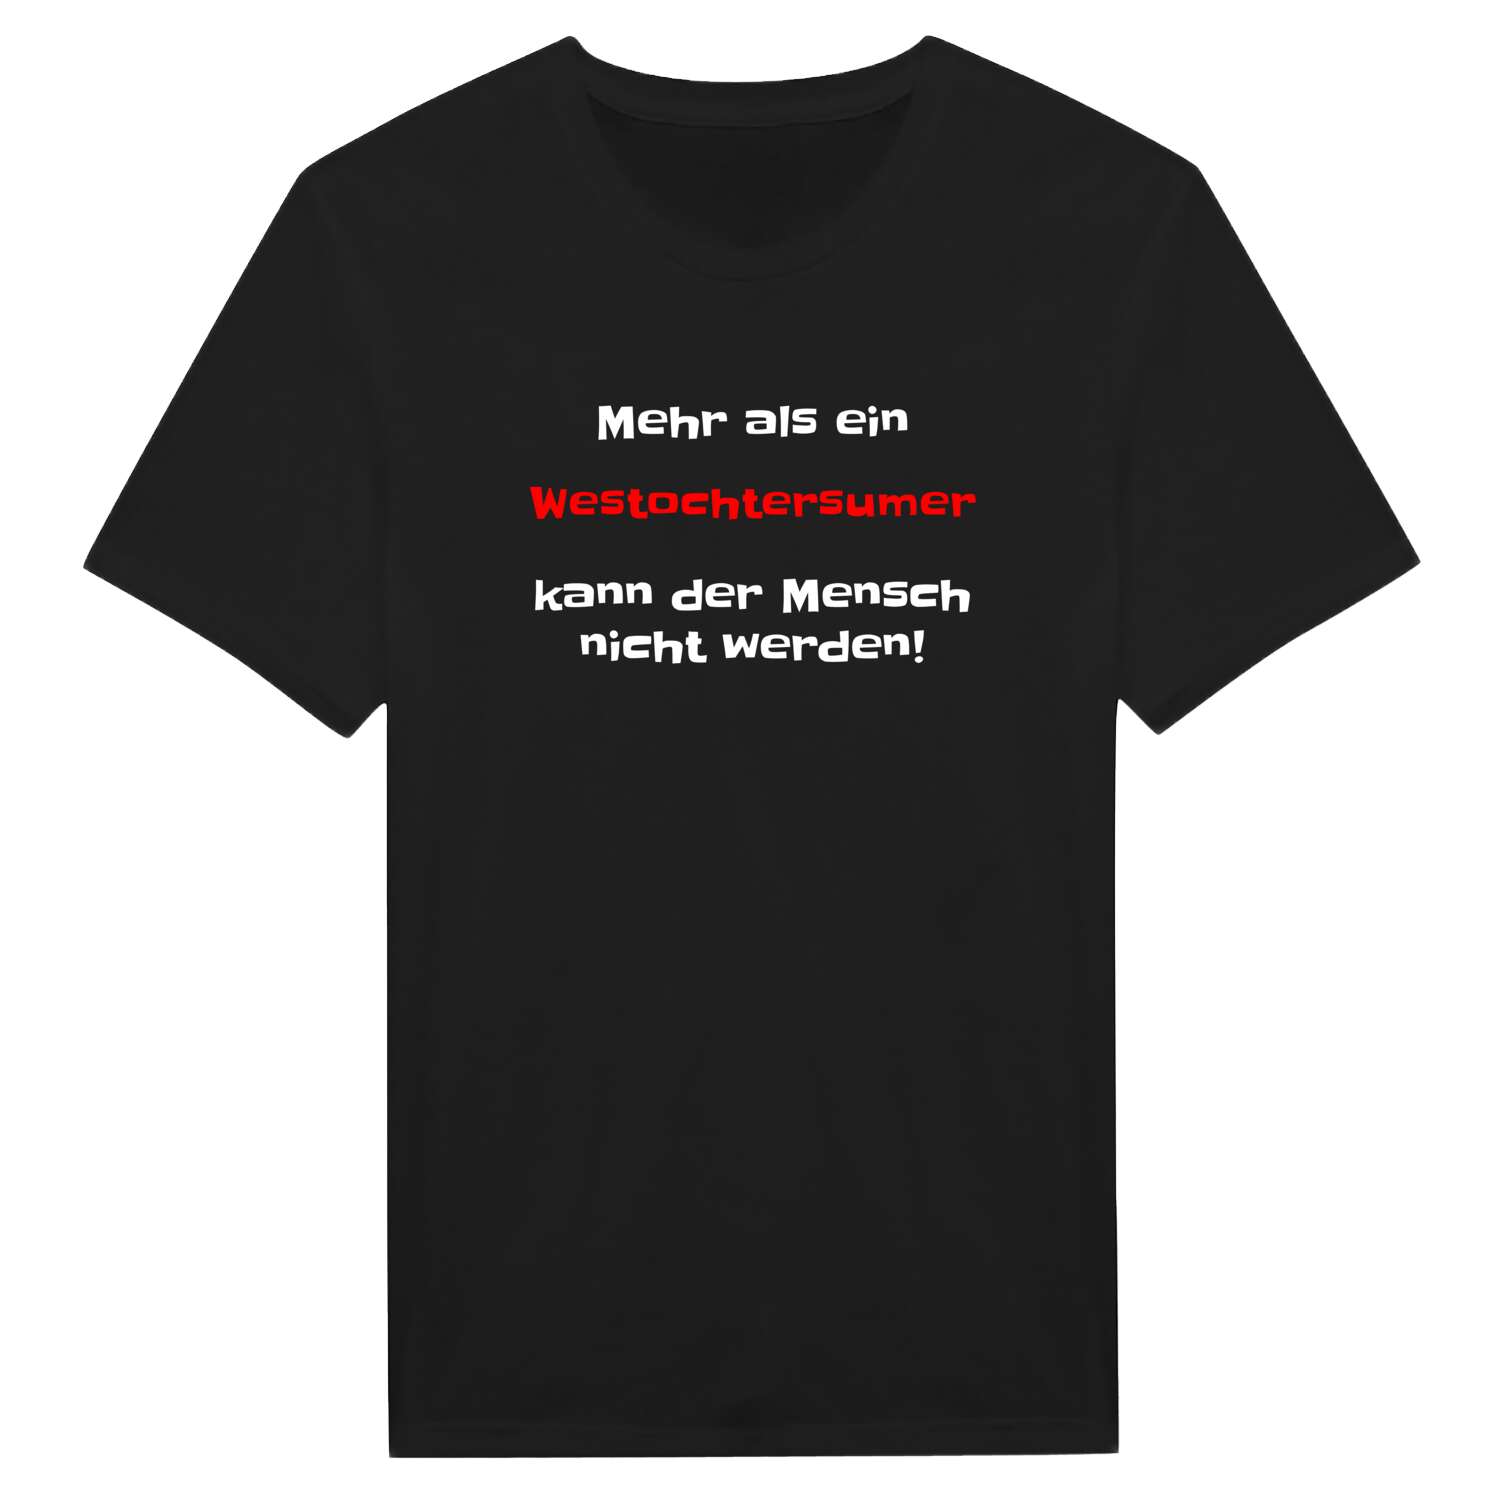 Westochtersum T-Shirt »Mehr als ein«